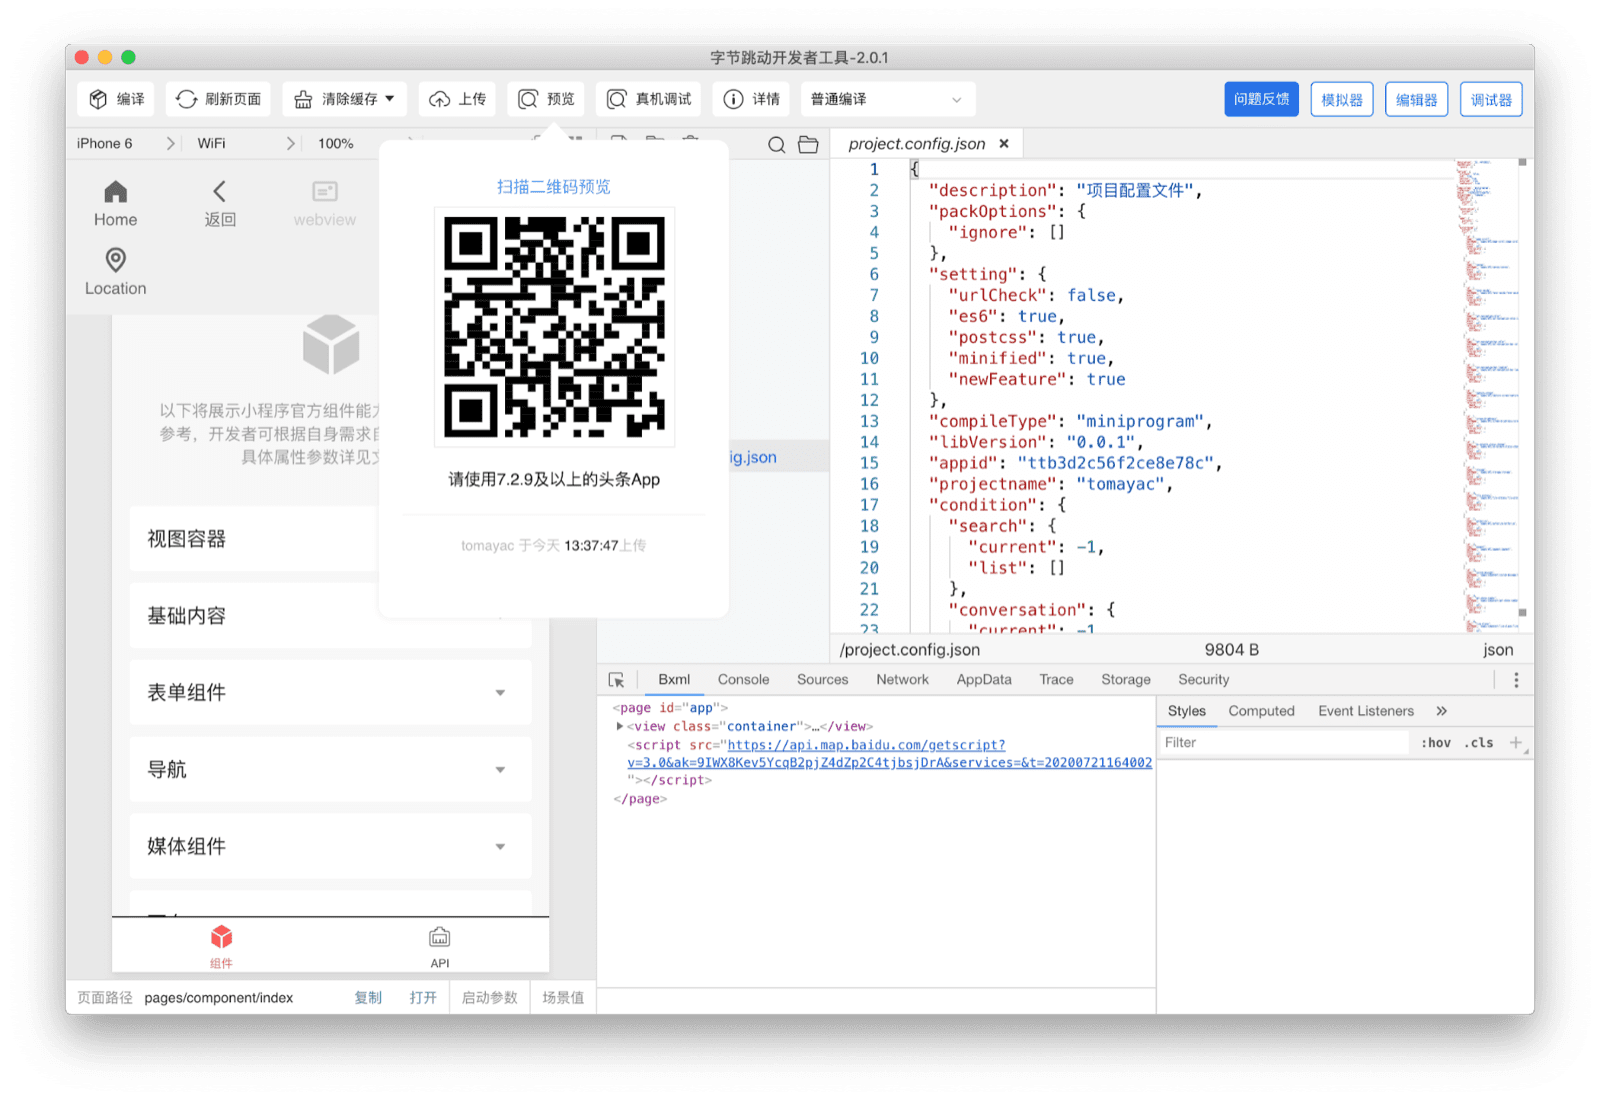 ByteDance DevTools یک کد QR را نشان می دهد که کاربر می تواند با برنامه Douyin آن را اسکن کند تا برنامه مینی فعلی را در دستگاه خود ببیند.